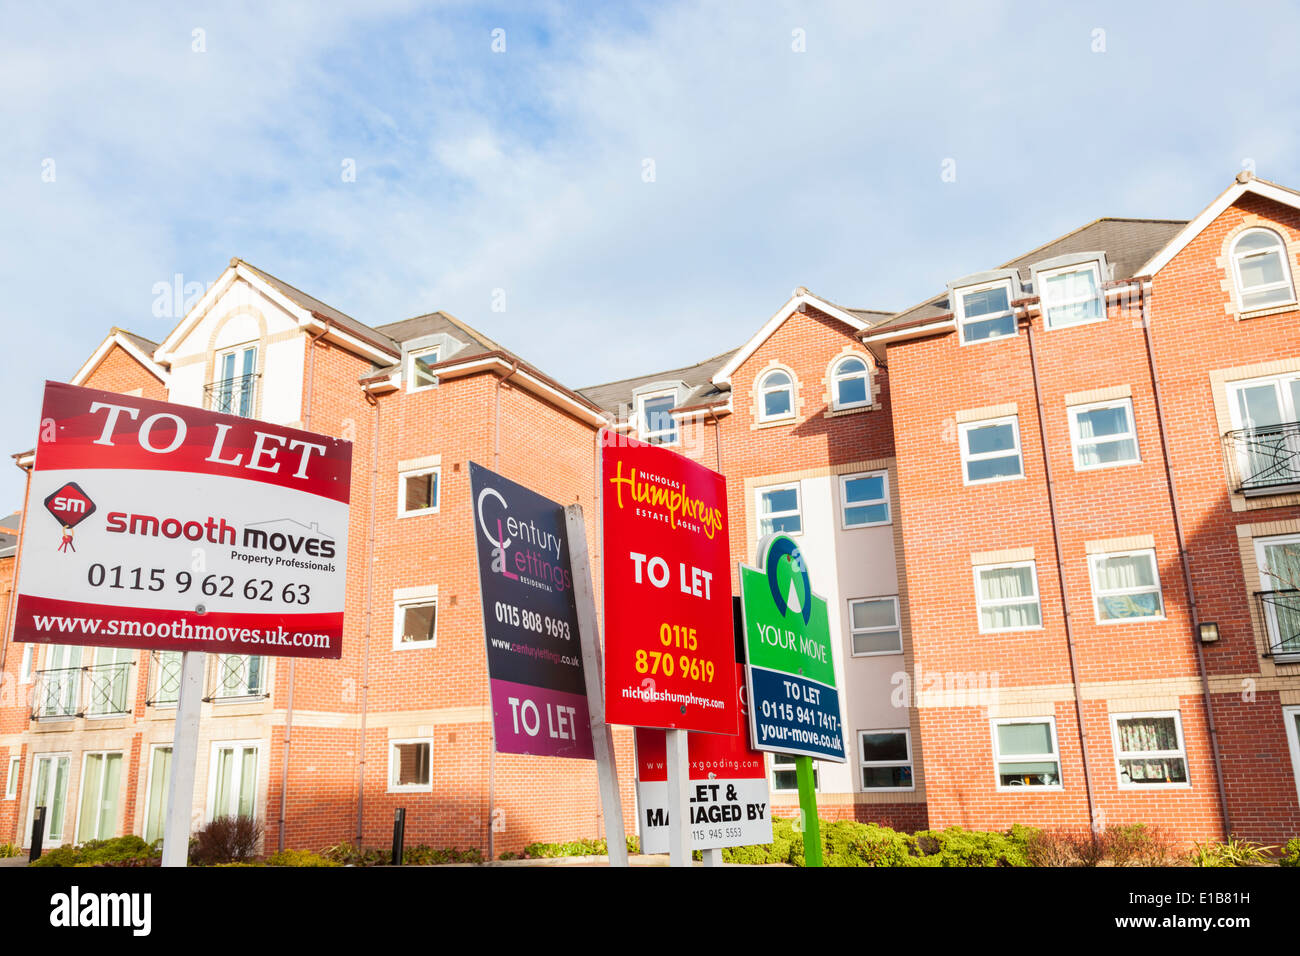 Agence de location et les panneaux signalant la présence d'appartements, maisons et logements à louer, Lancashire, England, UK Banque D'Images